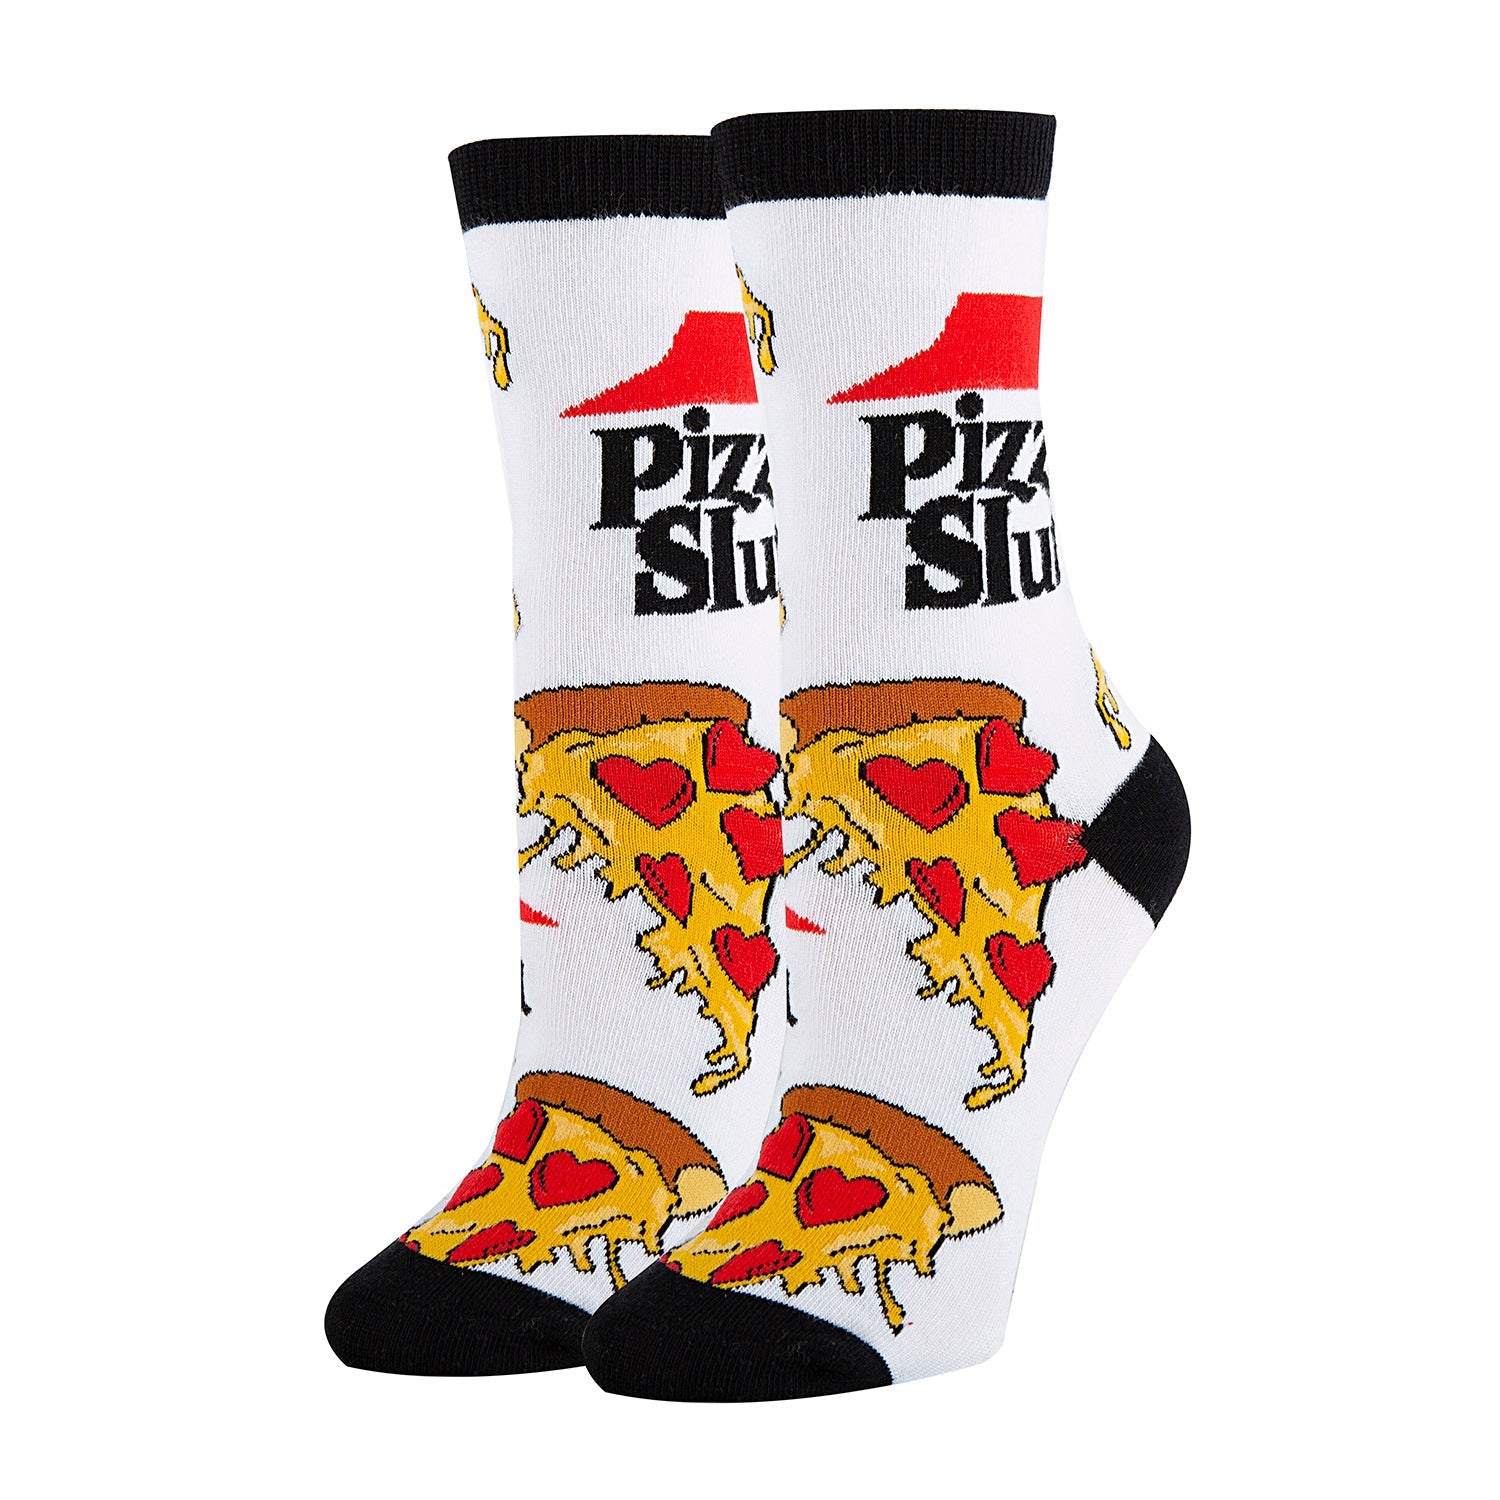 Pizza Slut Socks | Novelty Crew Socks For Womens